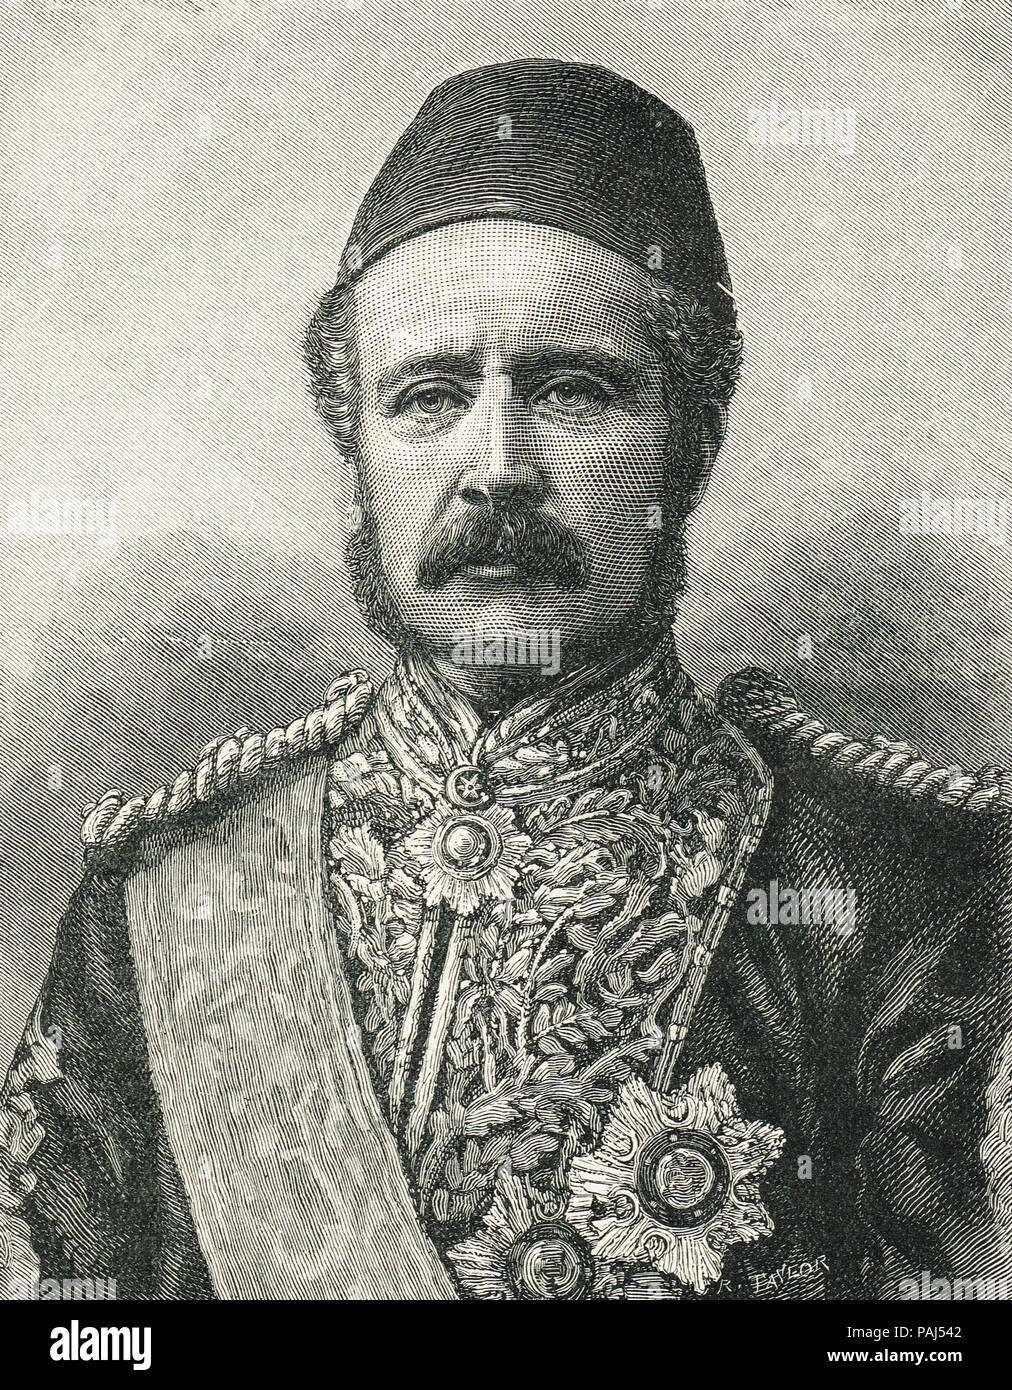 Le général Gordon, Gordon de Khartoum, 1833-1885 Banque D'Images